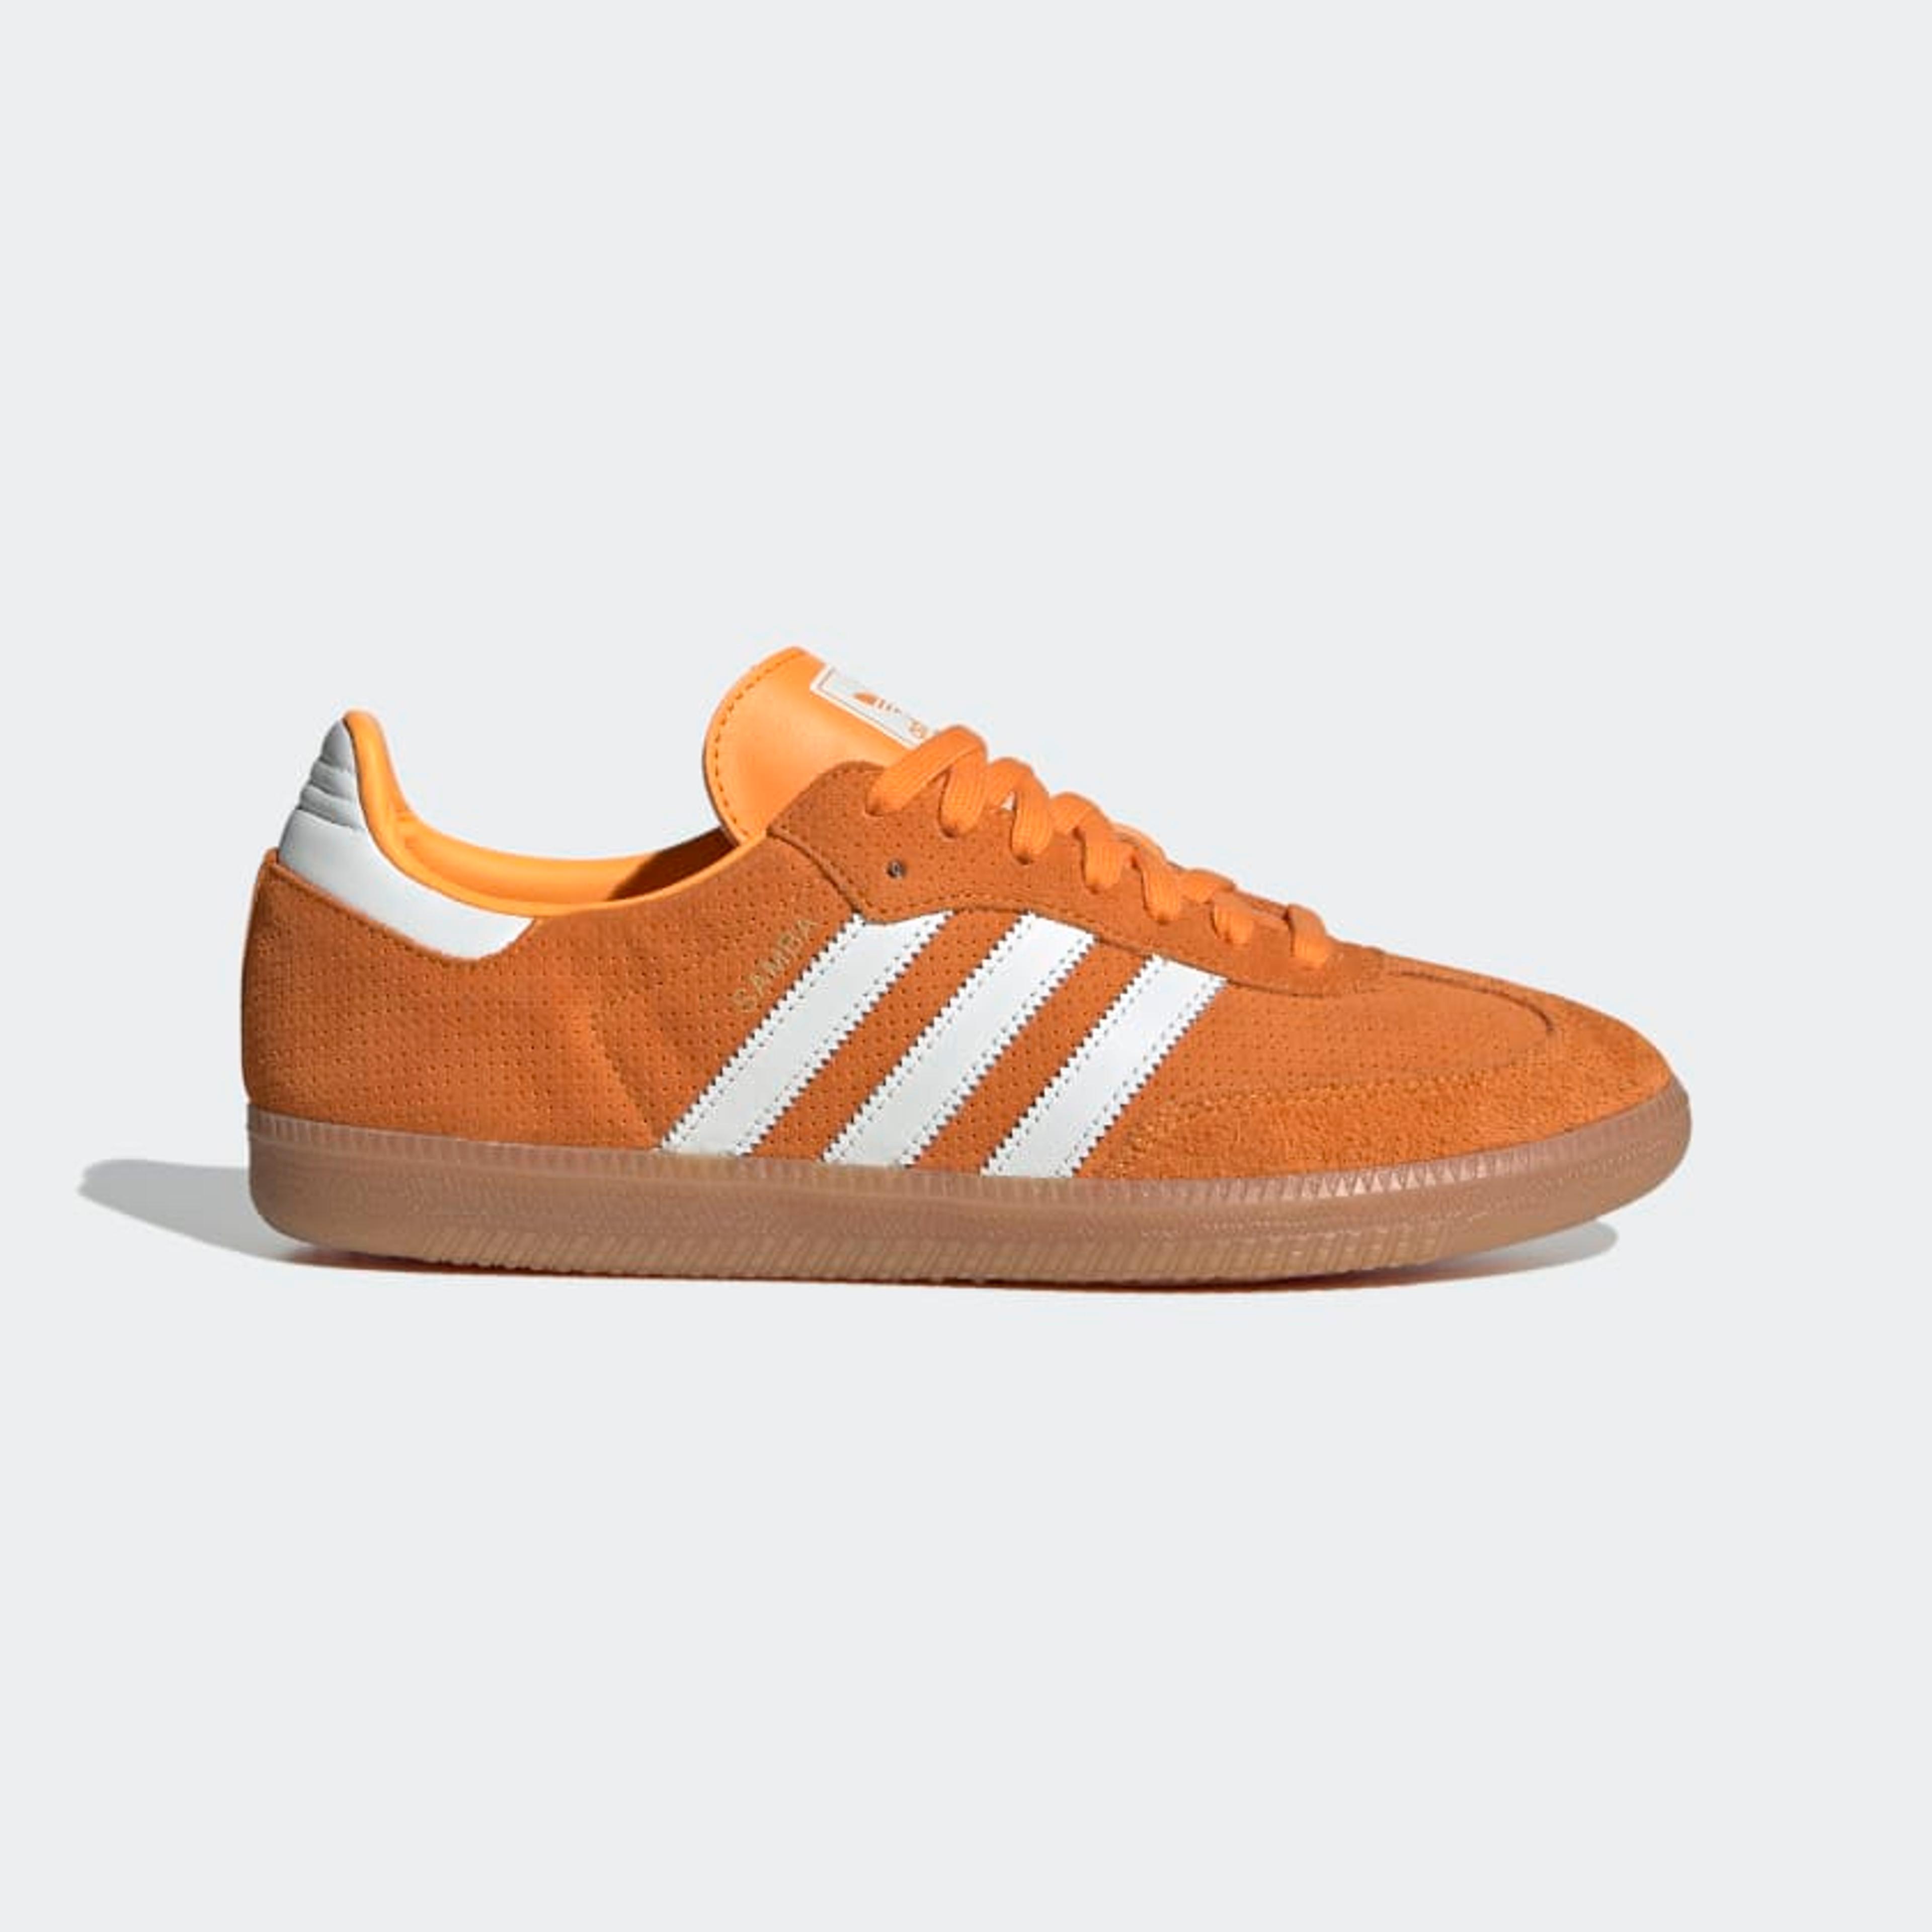 adidas Samba OG Shoes - Orange | Unisex Lifestyle | $90 - adidas US